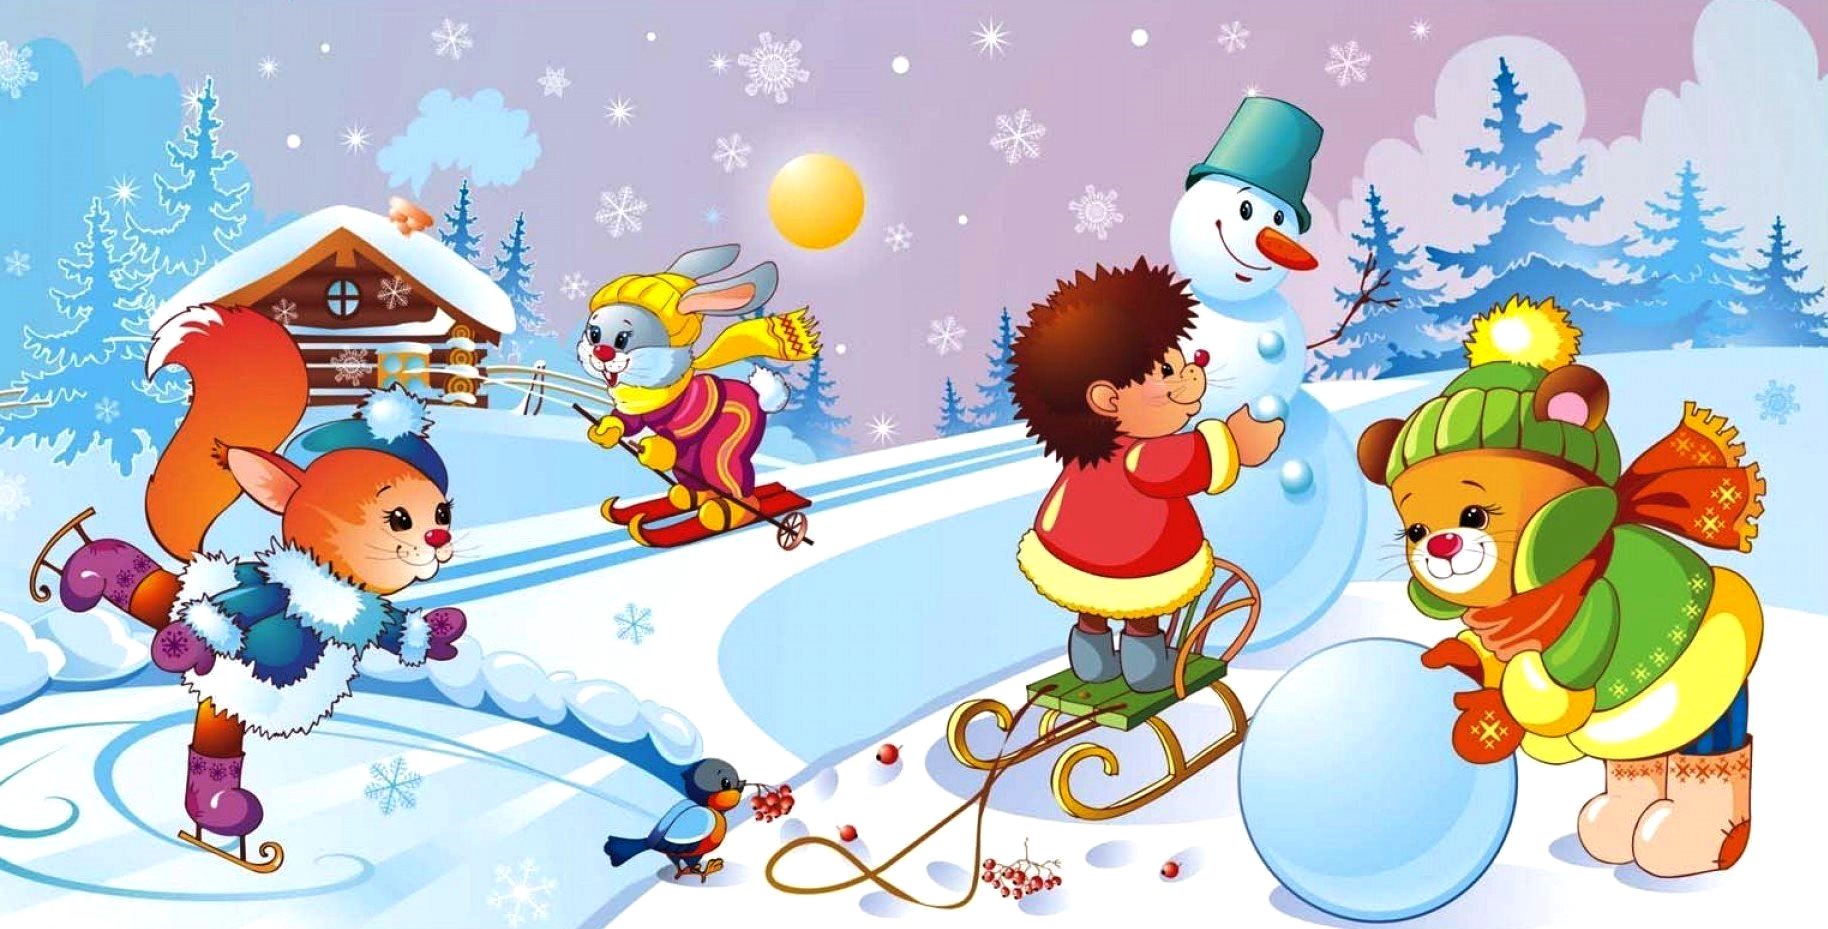 Картинка зимы для детей в детском саду. Зимние забавы. Зимние забавы для детей в детском саду. Зима для детей в детском саду. Зимние картинки для детского сада.